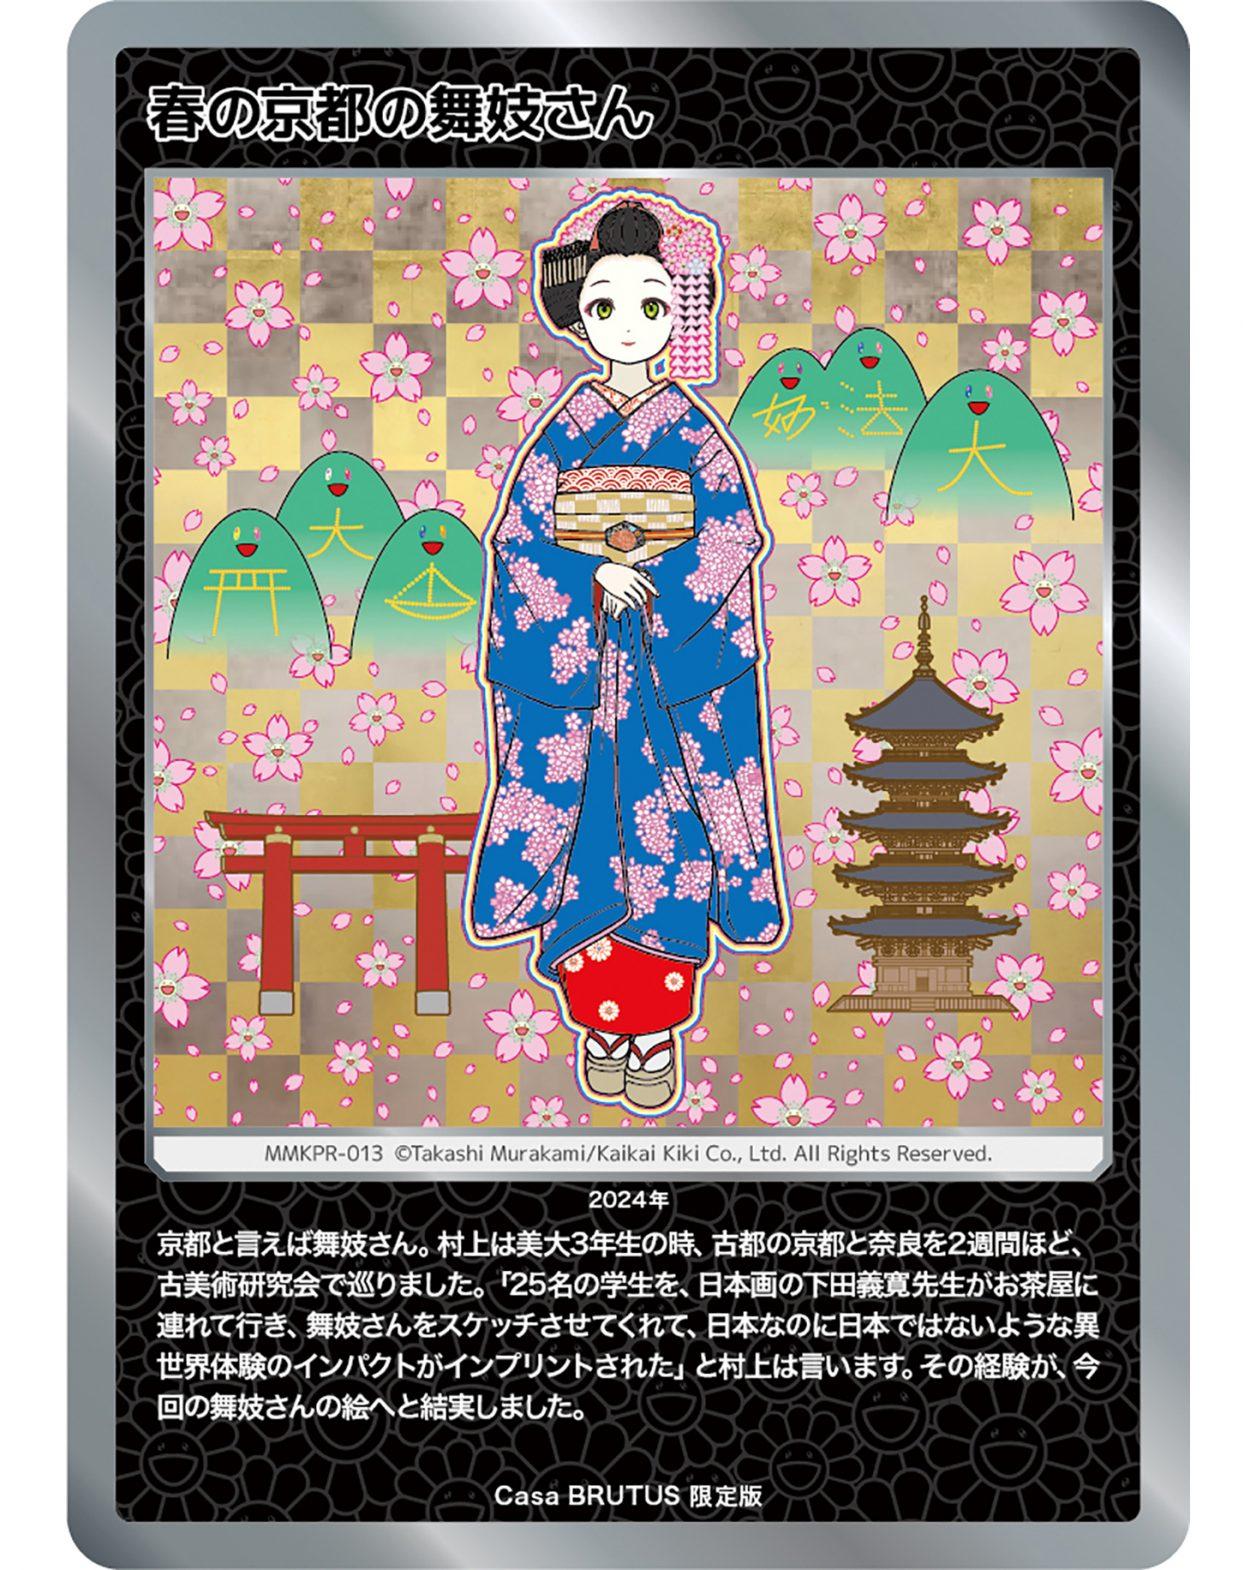 「村上隆もののけ京都」トレカ、Casa BRUTUS 限定版「春の京都の舞妓さん」登場！